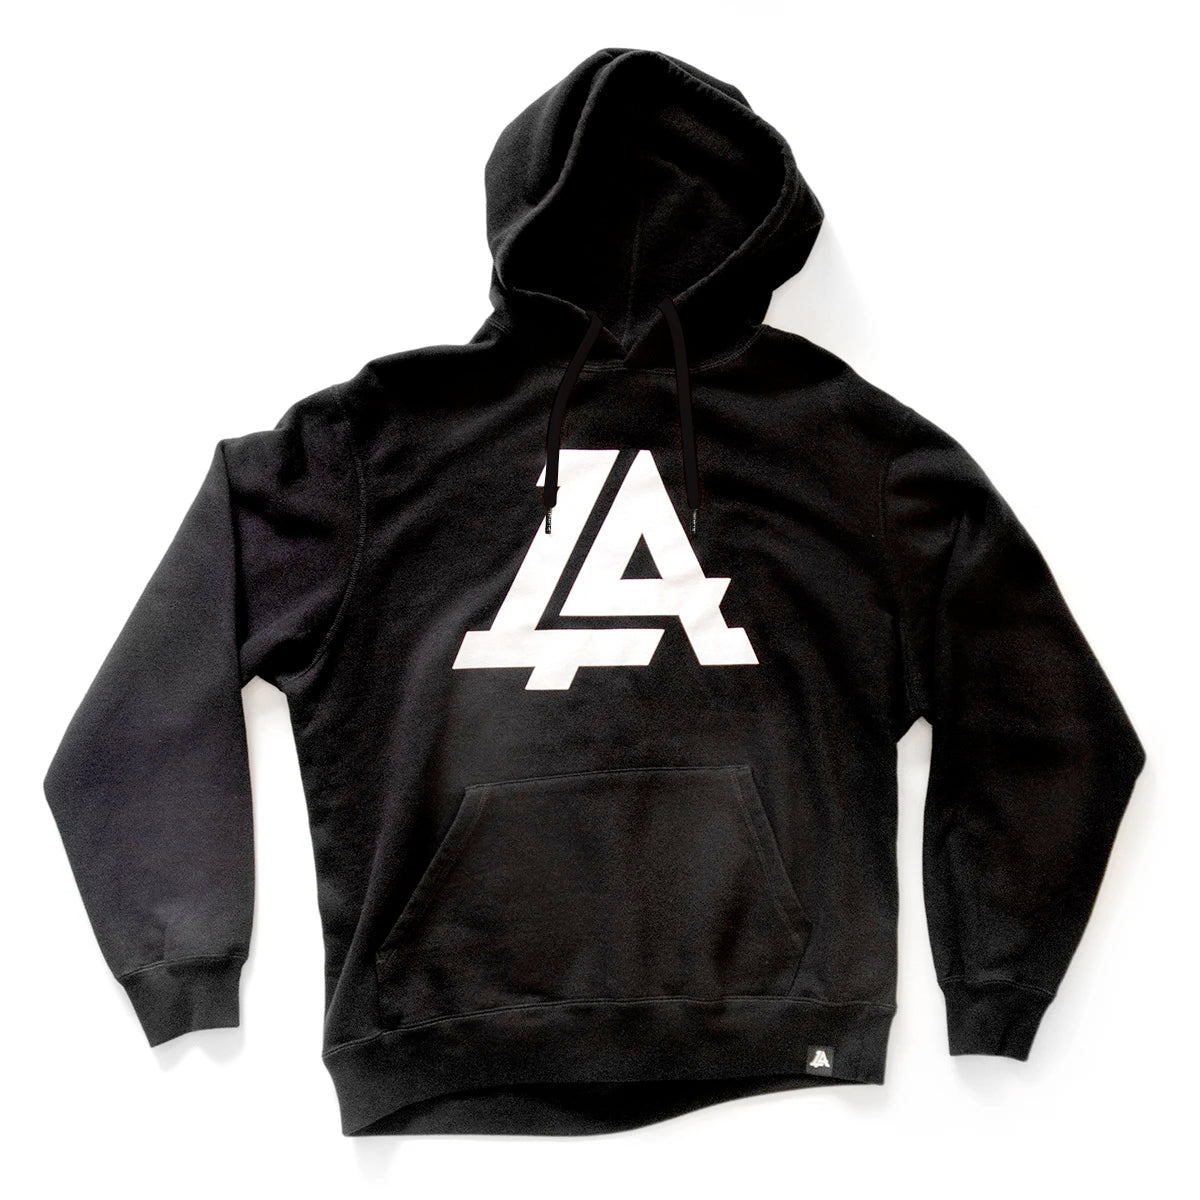 Lost Art Canada - black icon hoodie sweatshirt front view black strings